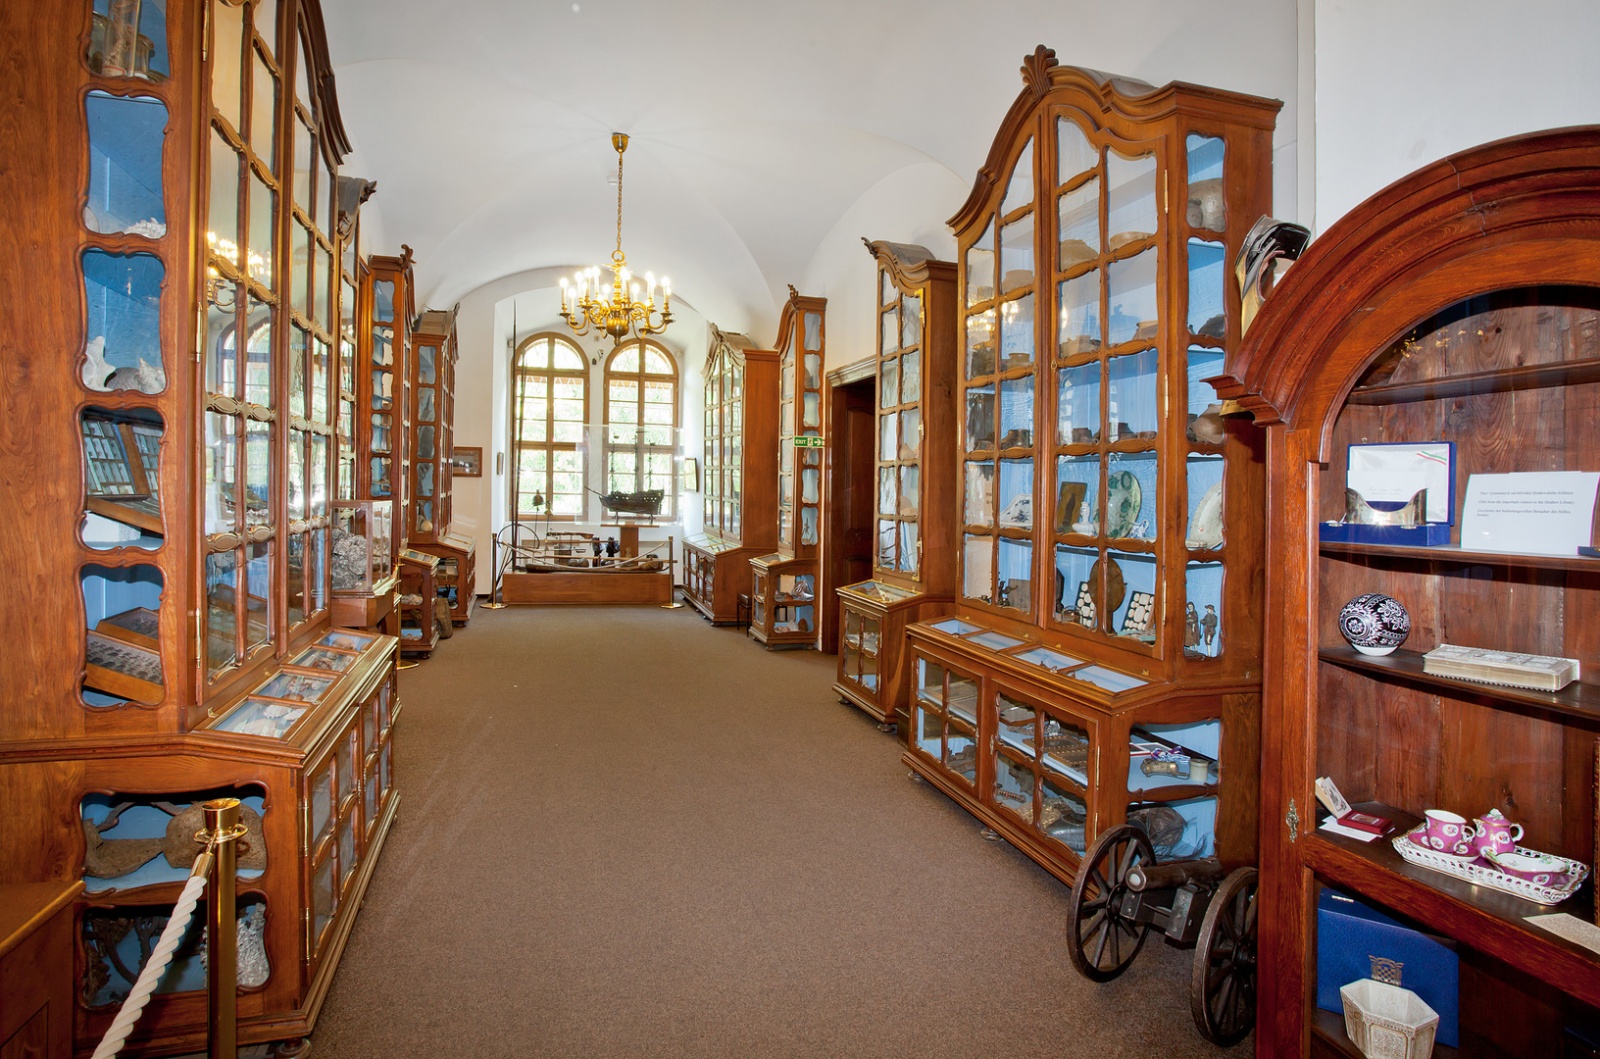 Страговская библиотека (Strahovská knihovna) - библиотека монастыря, которая является одной из самых ценных и лучше всего сохранившихся исторических библиотек